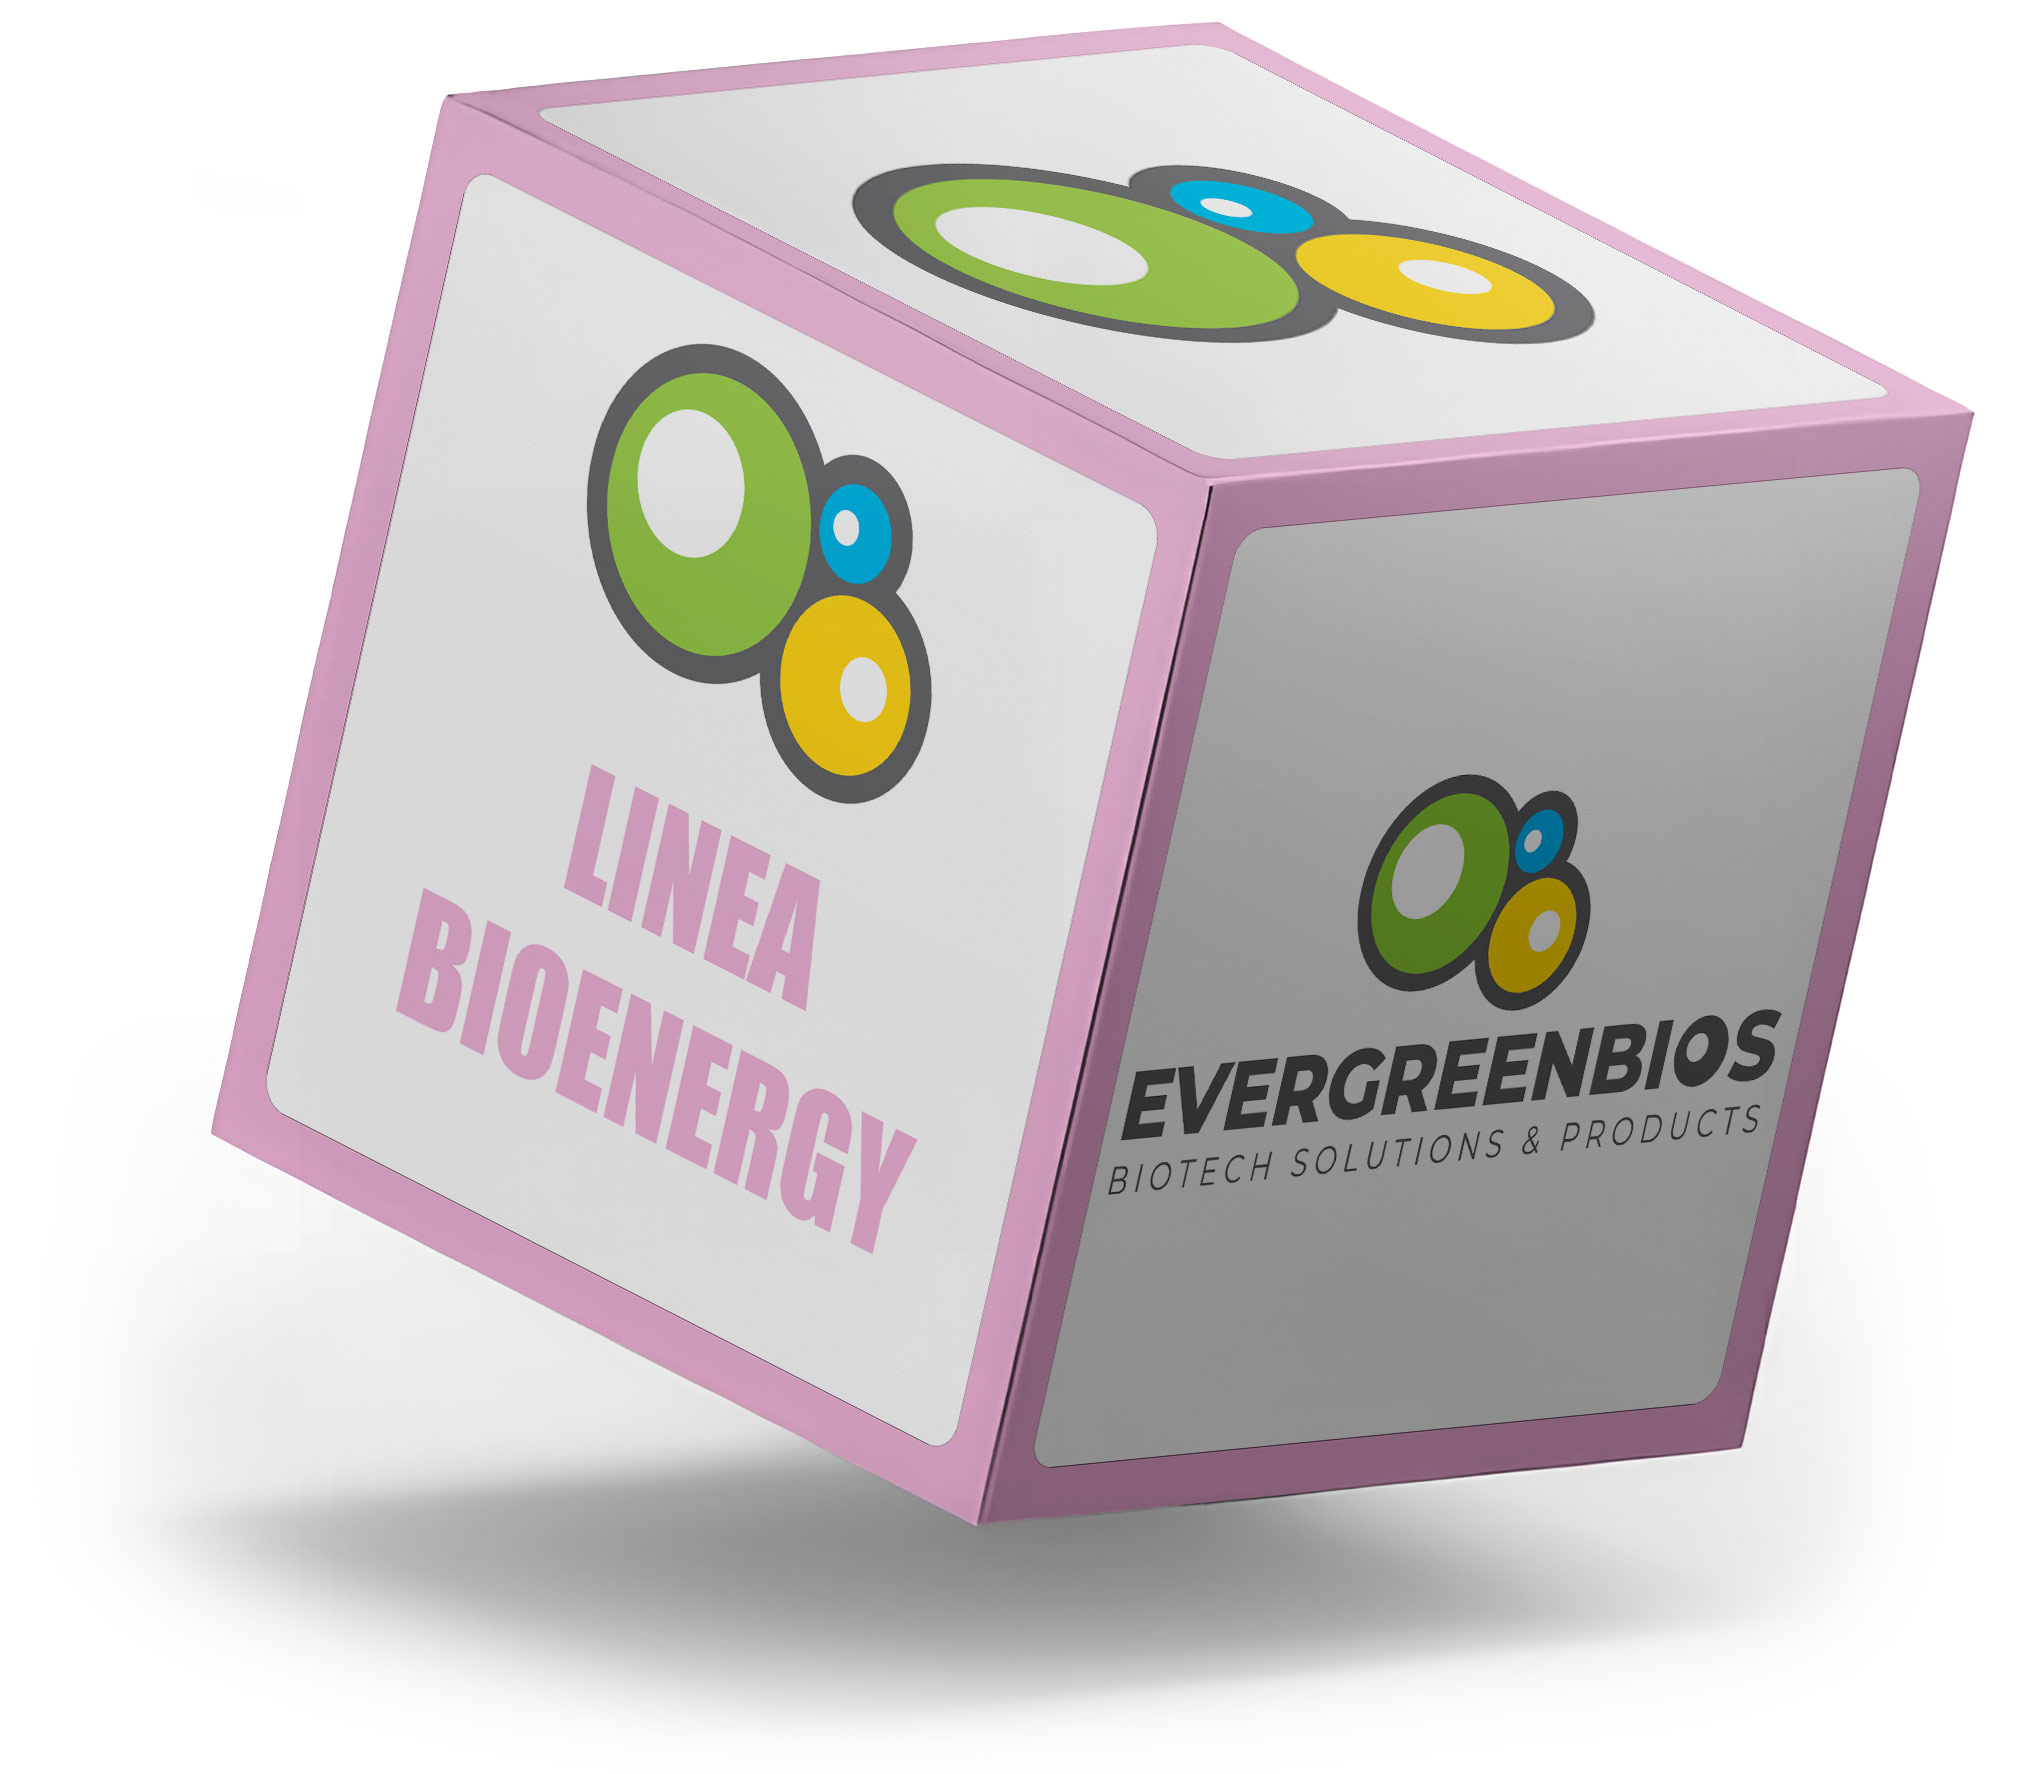 Linea Bioenergy